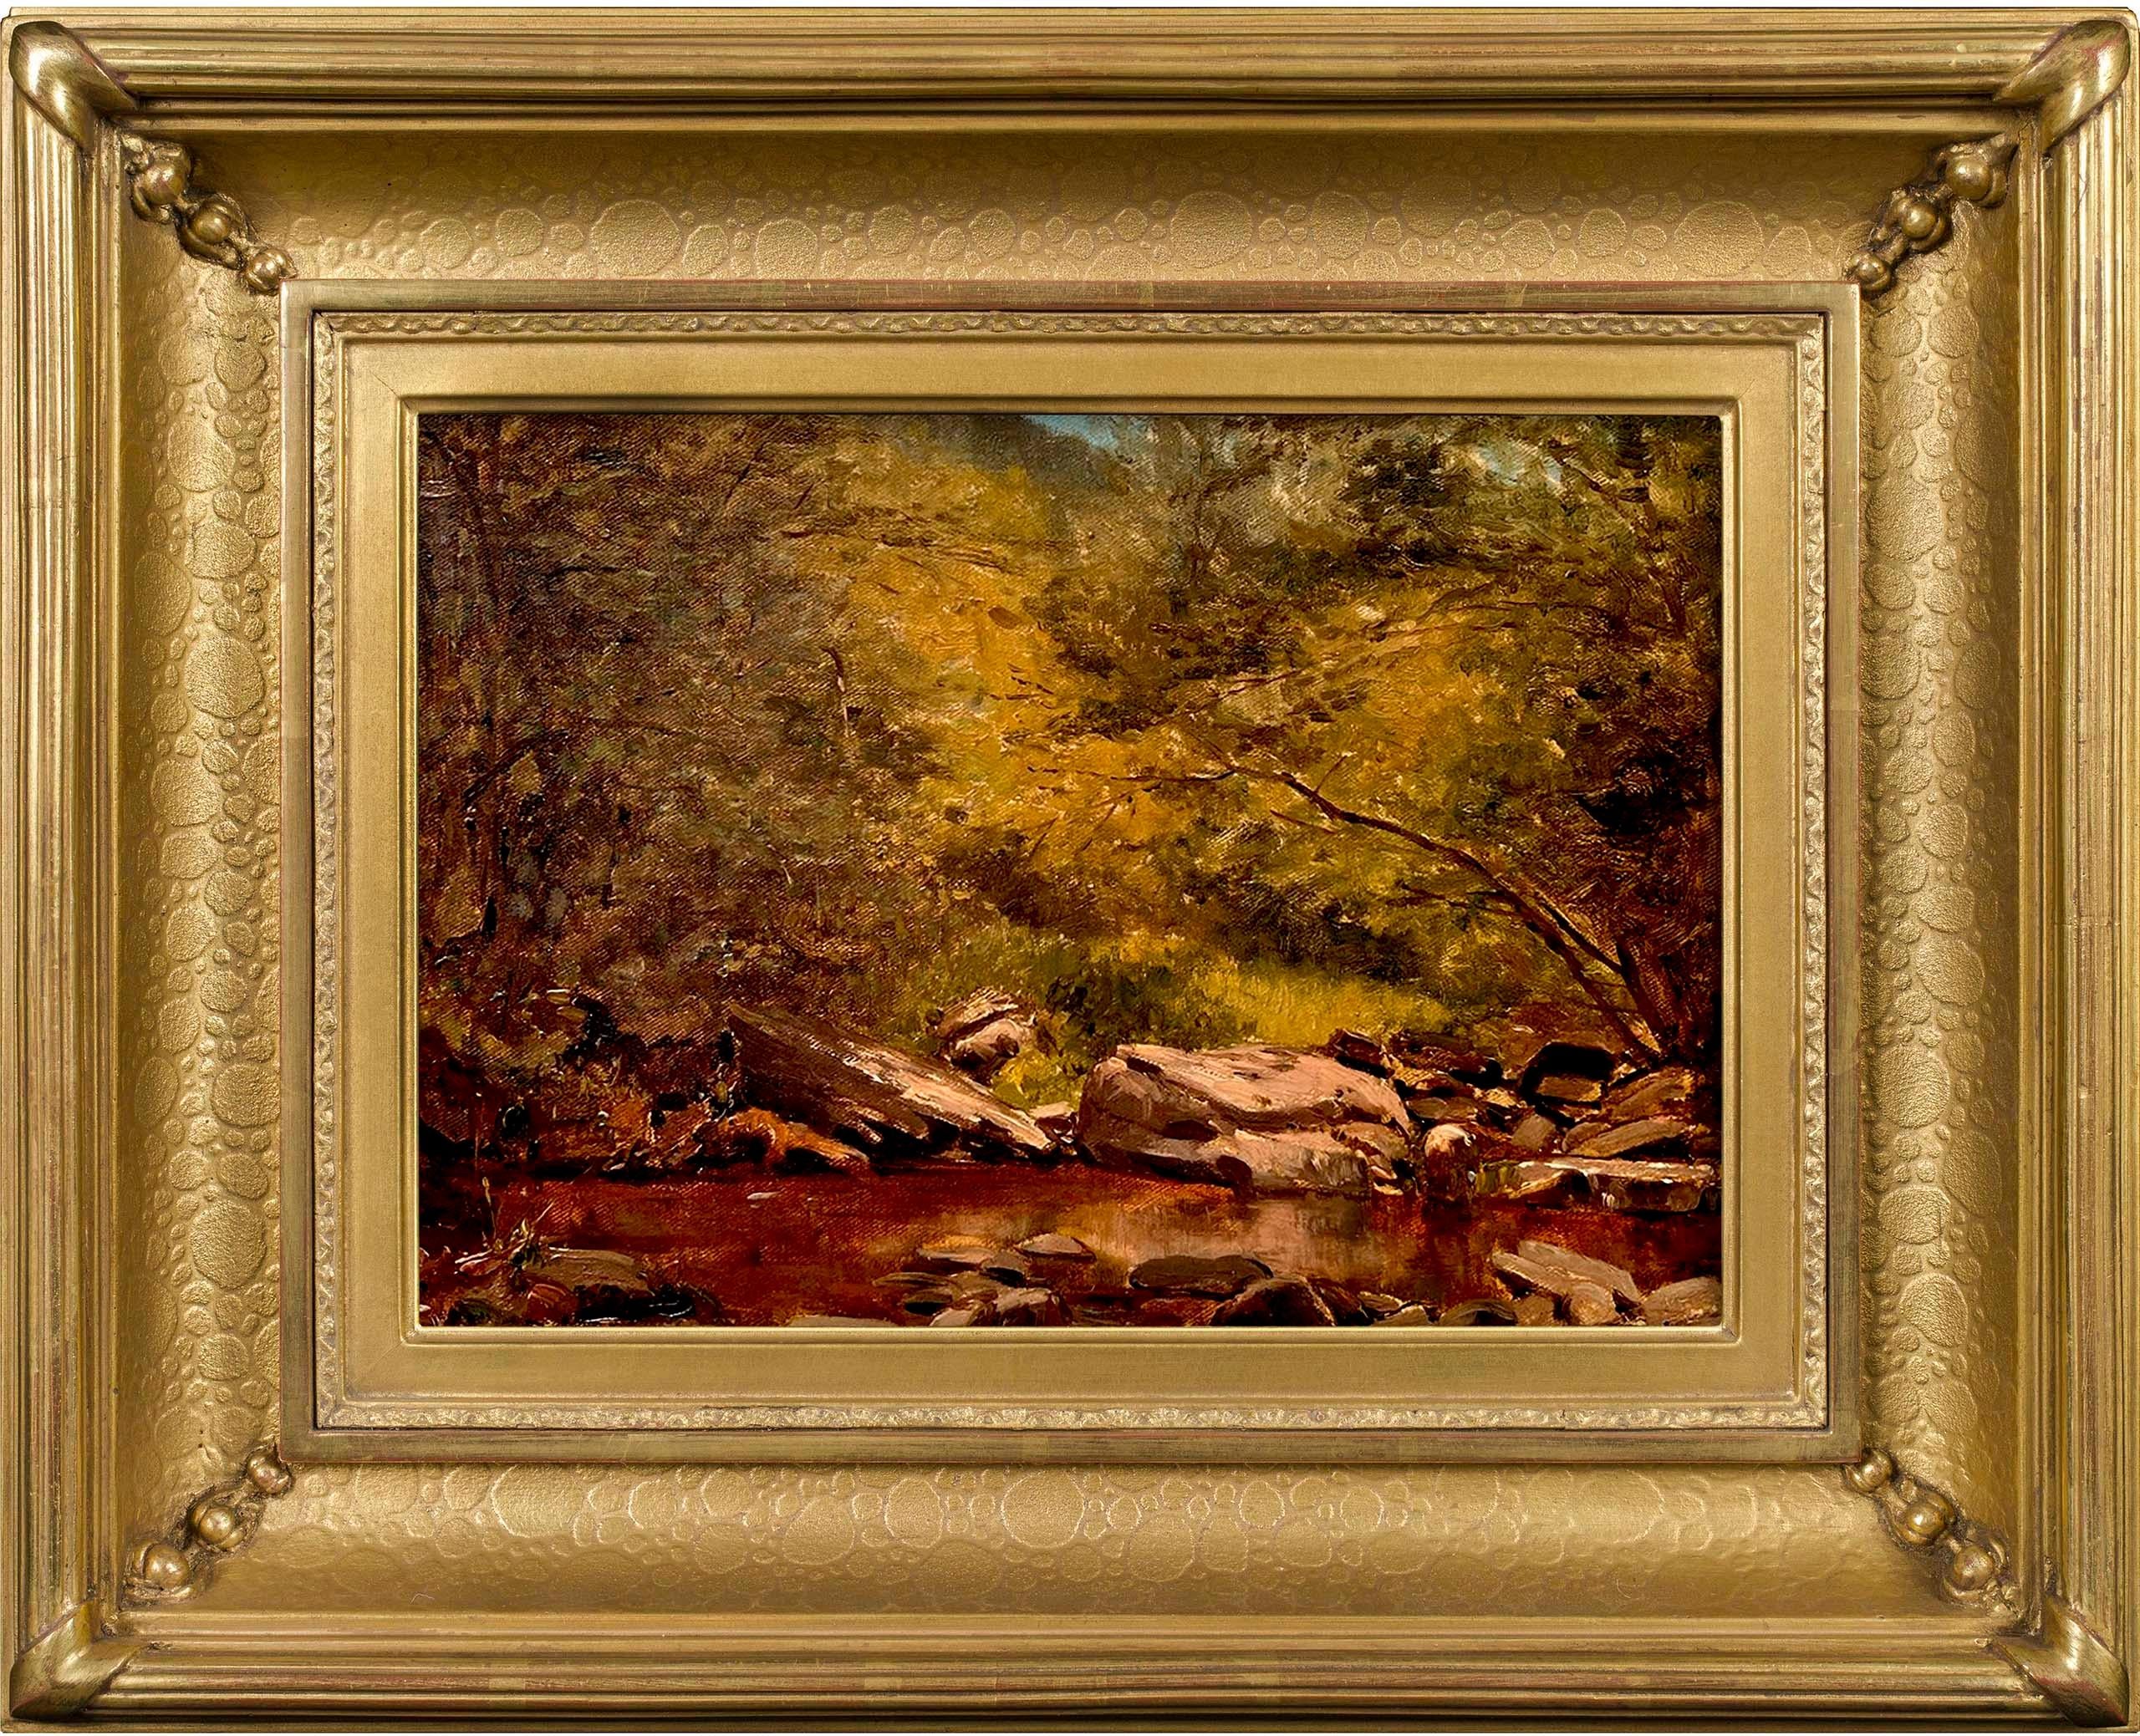 "Mink Hollow Brook" von Jervis McEntee (1828-1891), einem Künstler der Hudson River School, zeigt die üppige Vegetation und das felsige Gelände  rund um einen Catskill-Bach. Dieses Ölgemälde auf Leinwand aus dem 19. Jahrhundert misst 11 x 15,25 Zoll